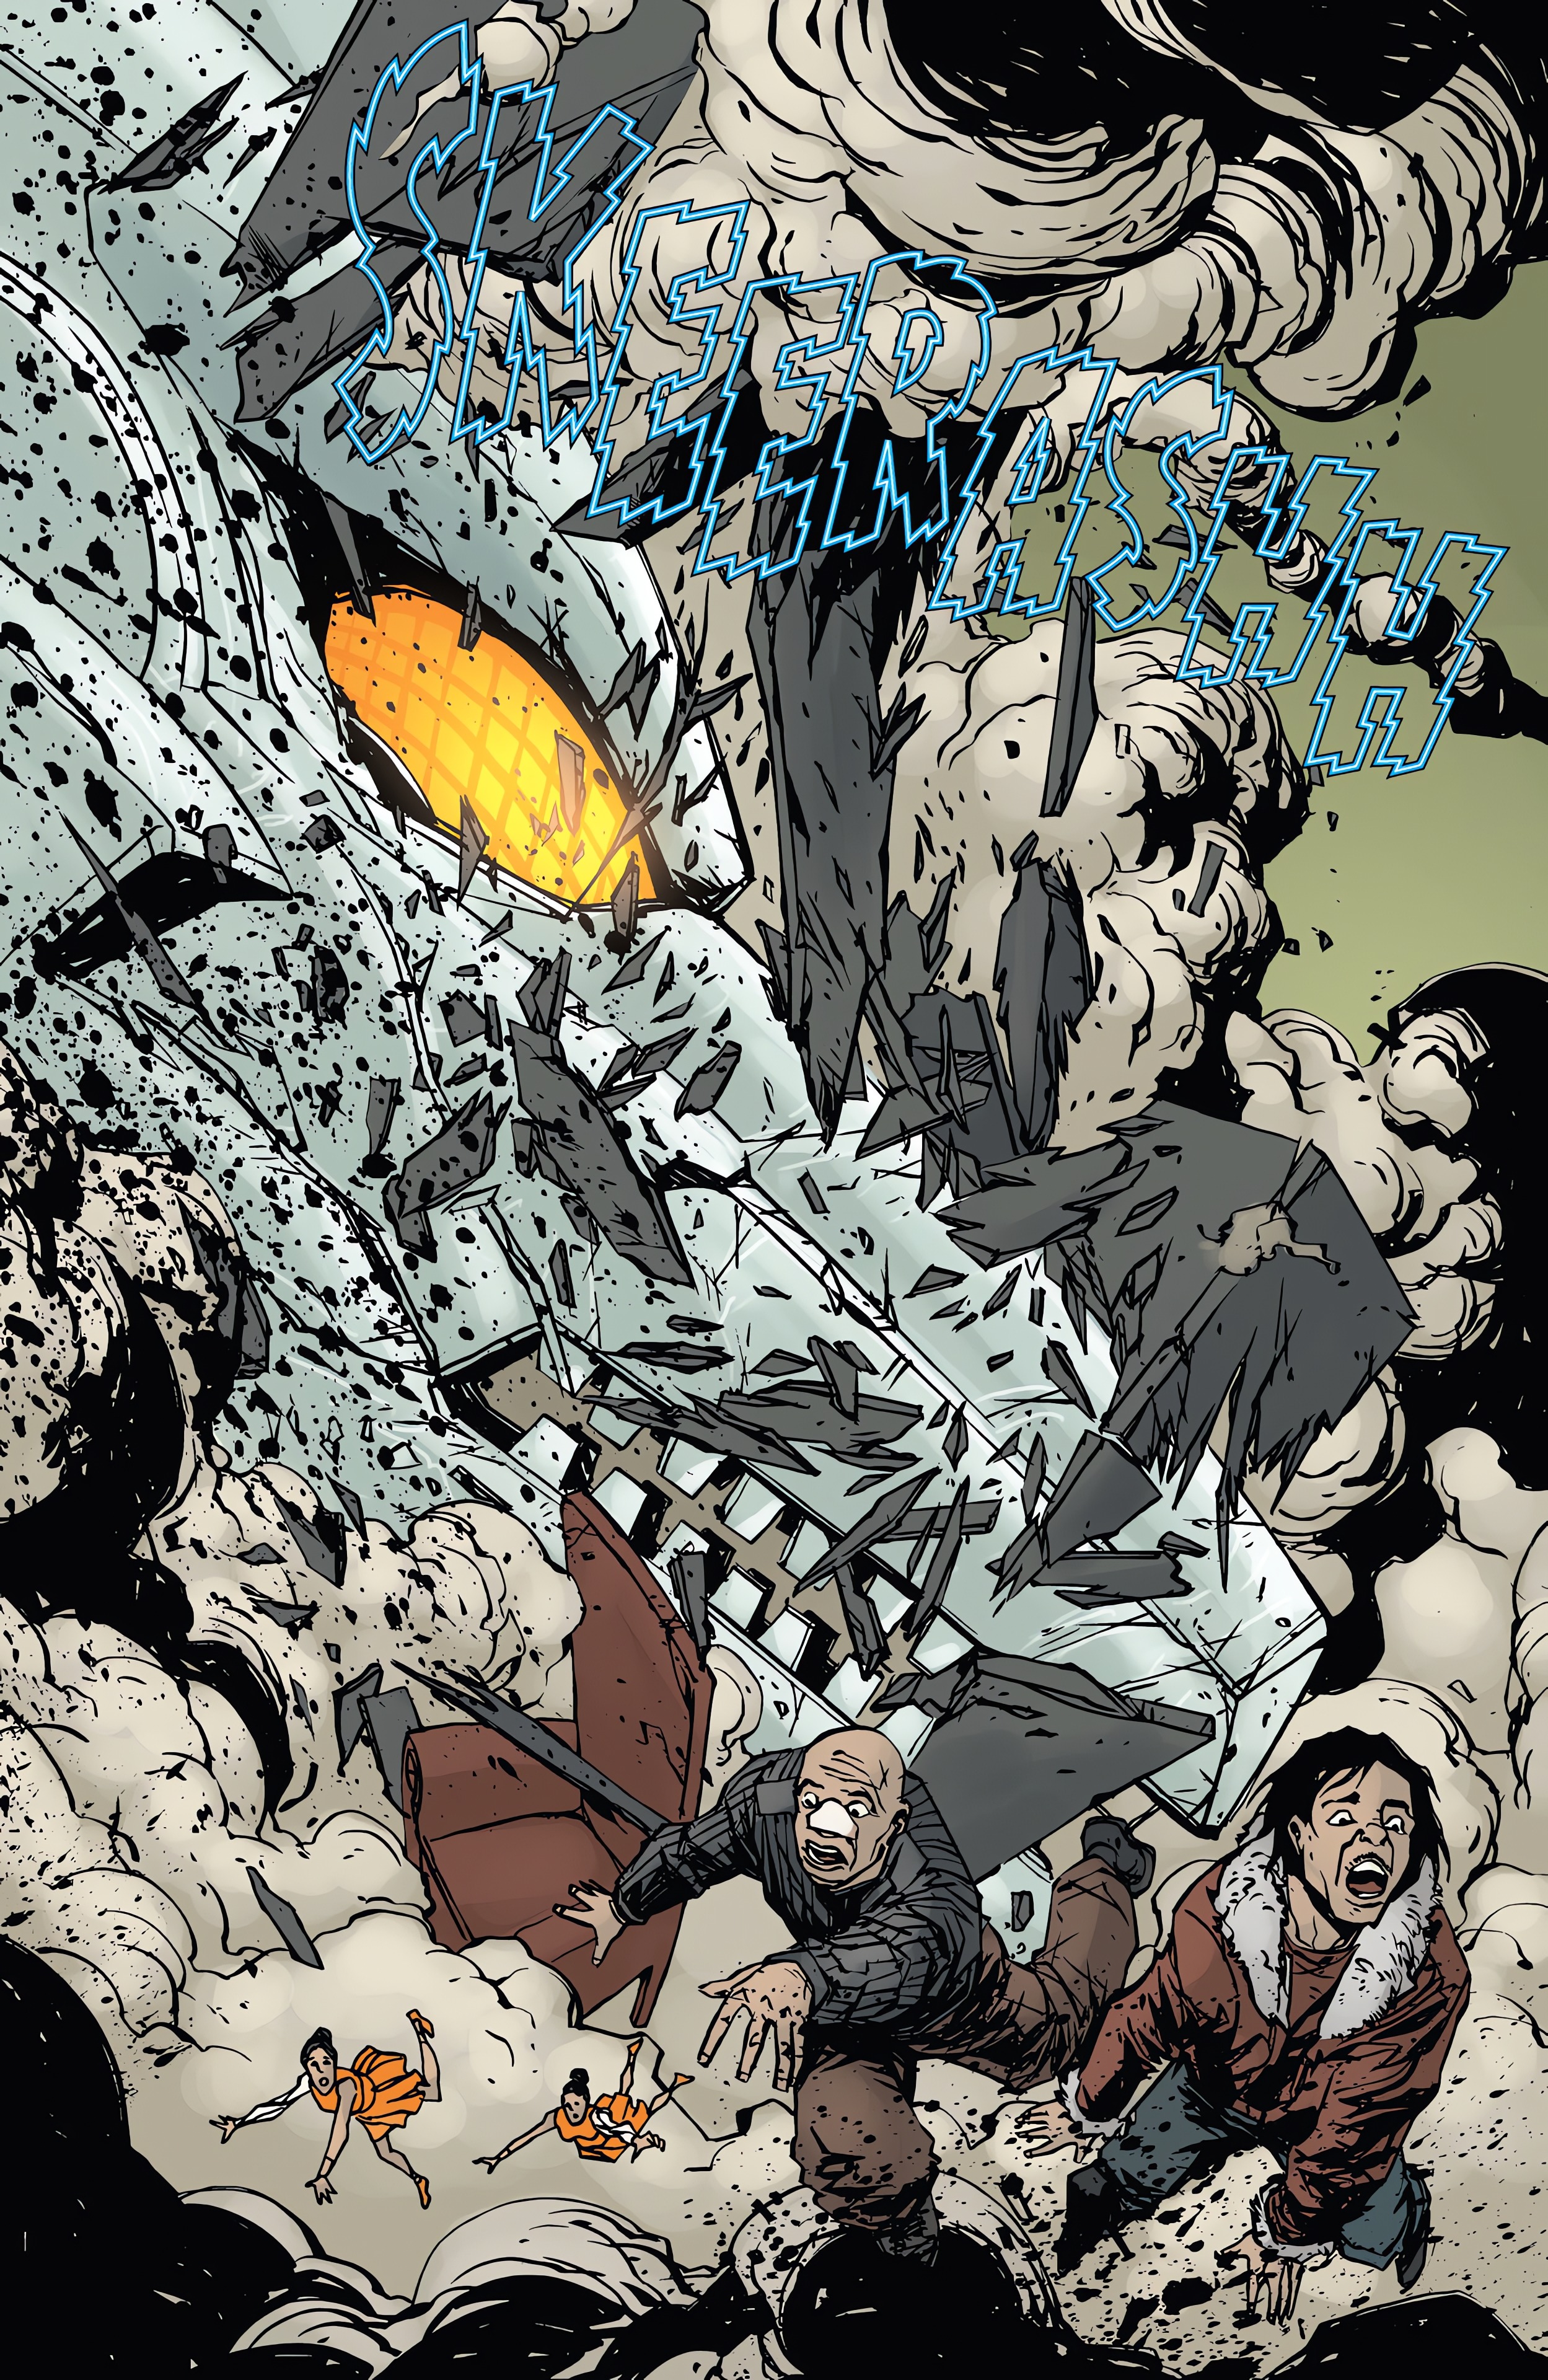 Read online Godzilla: Best of Mechagodzilla comic -  Issue # TPB - 13